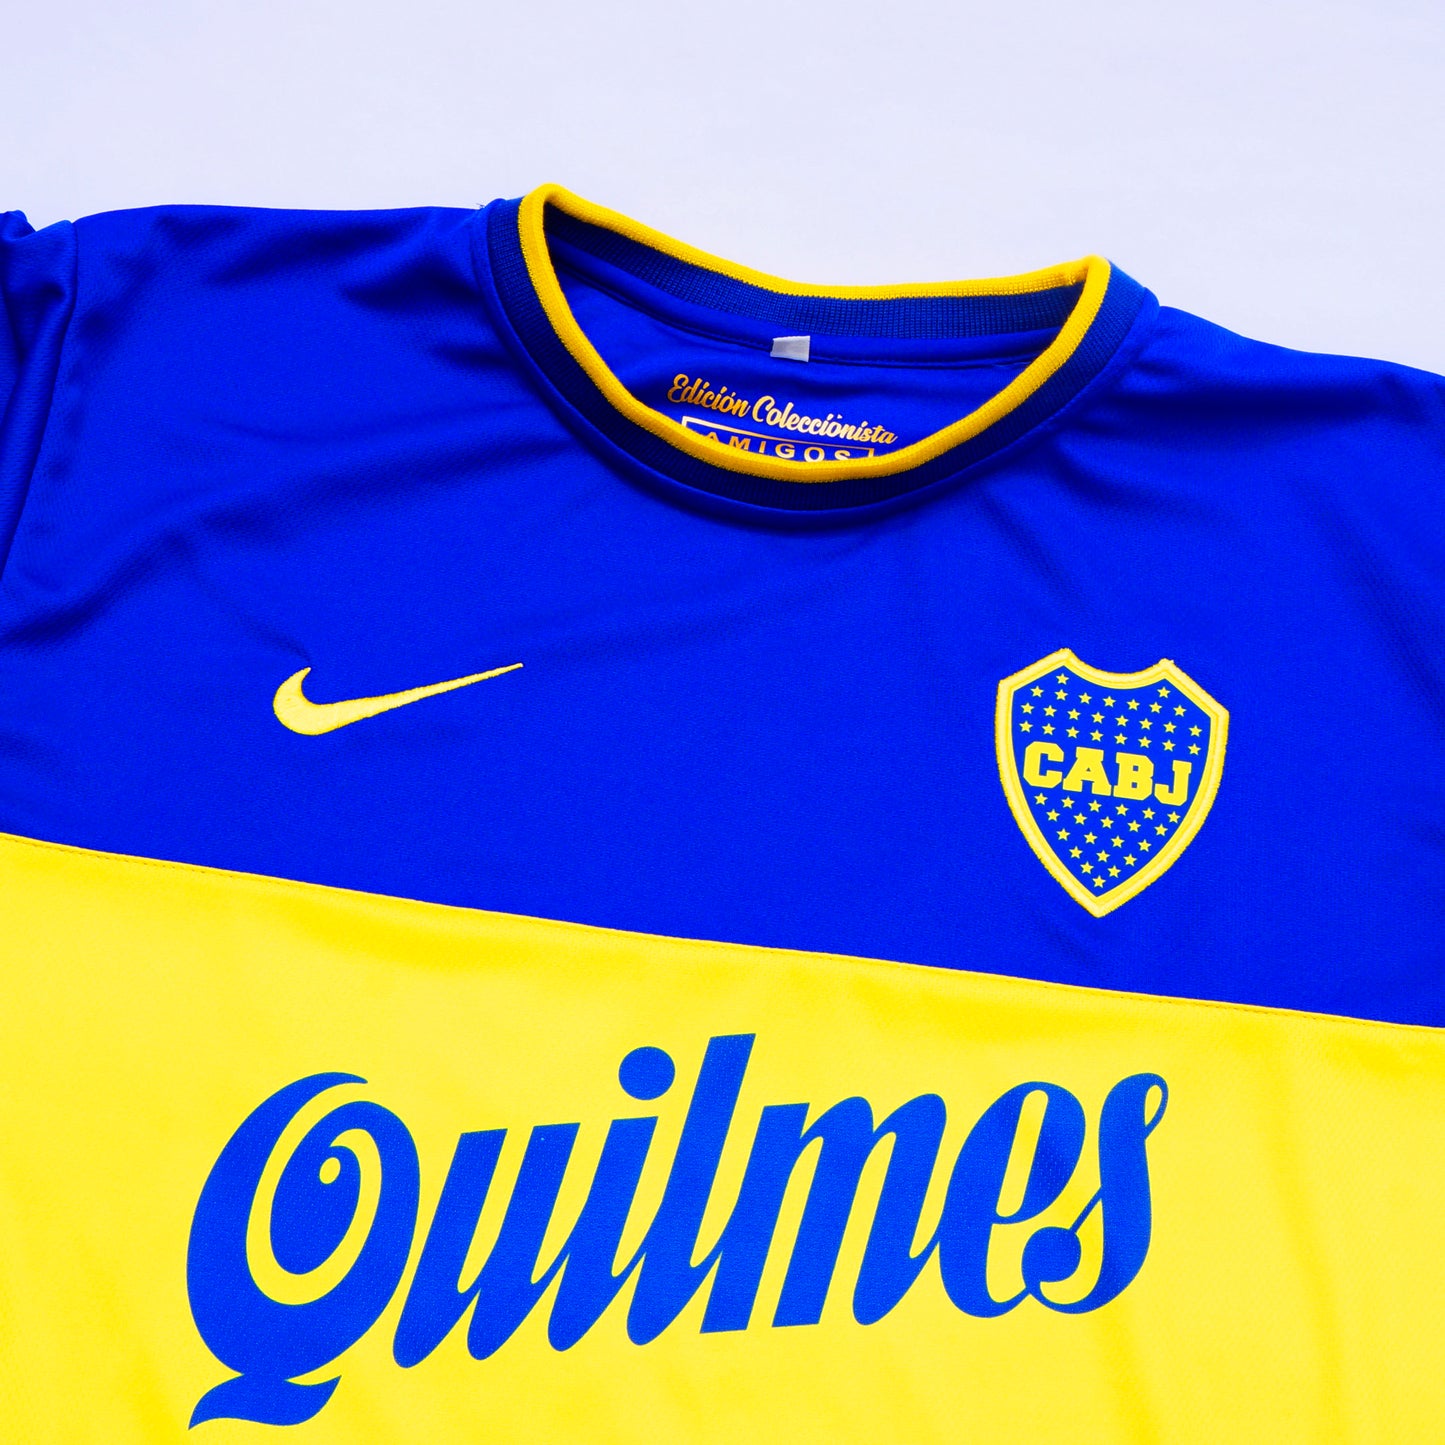 Camiseta Boca Juniors 2000 RIQUELME